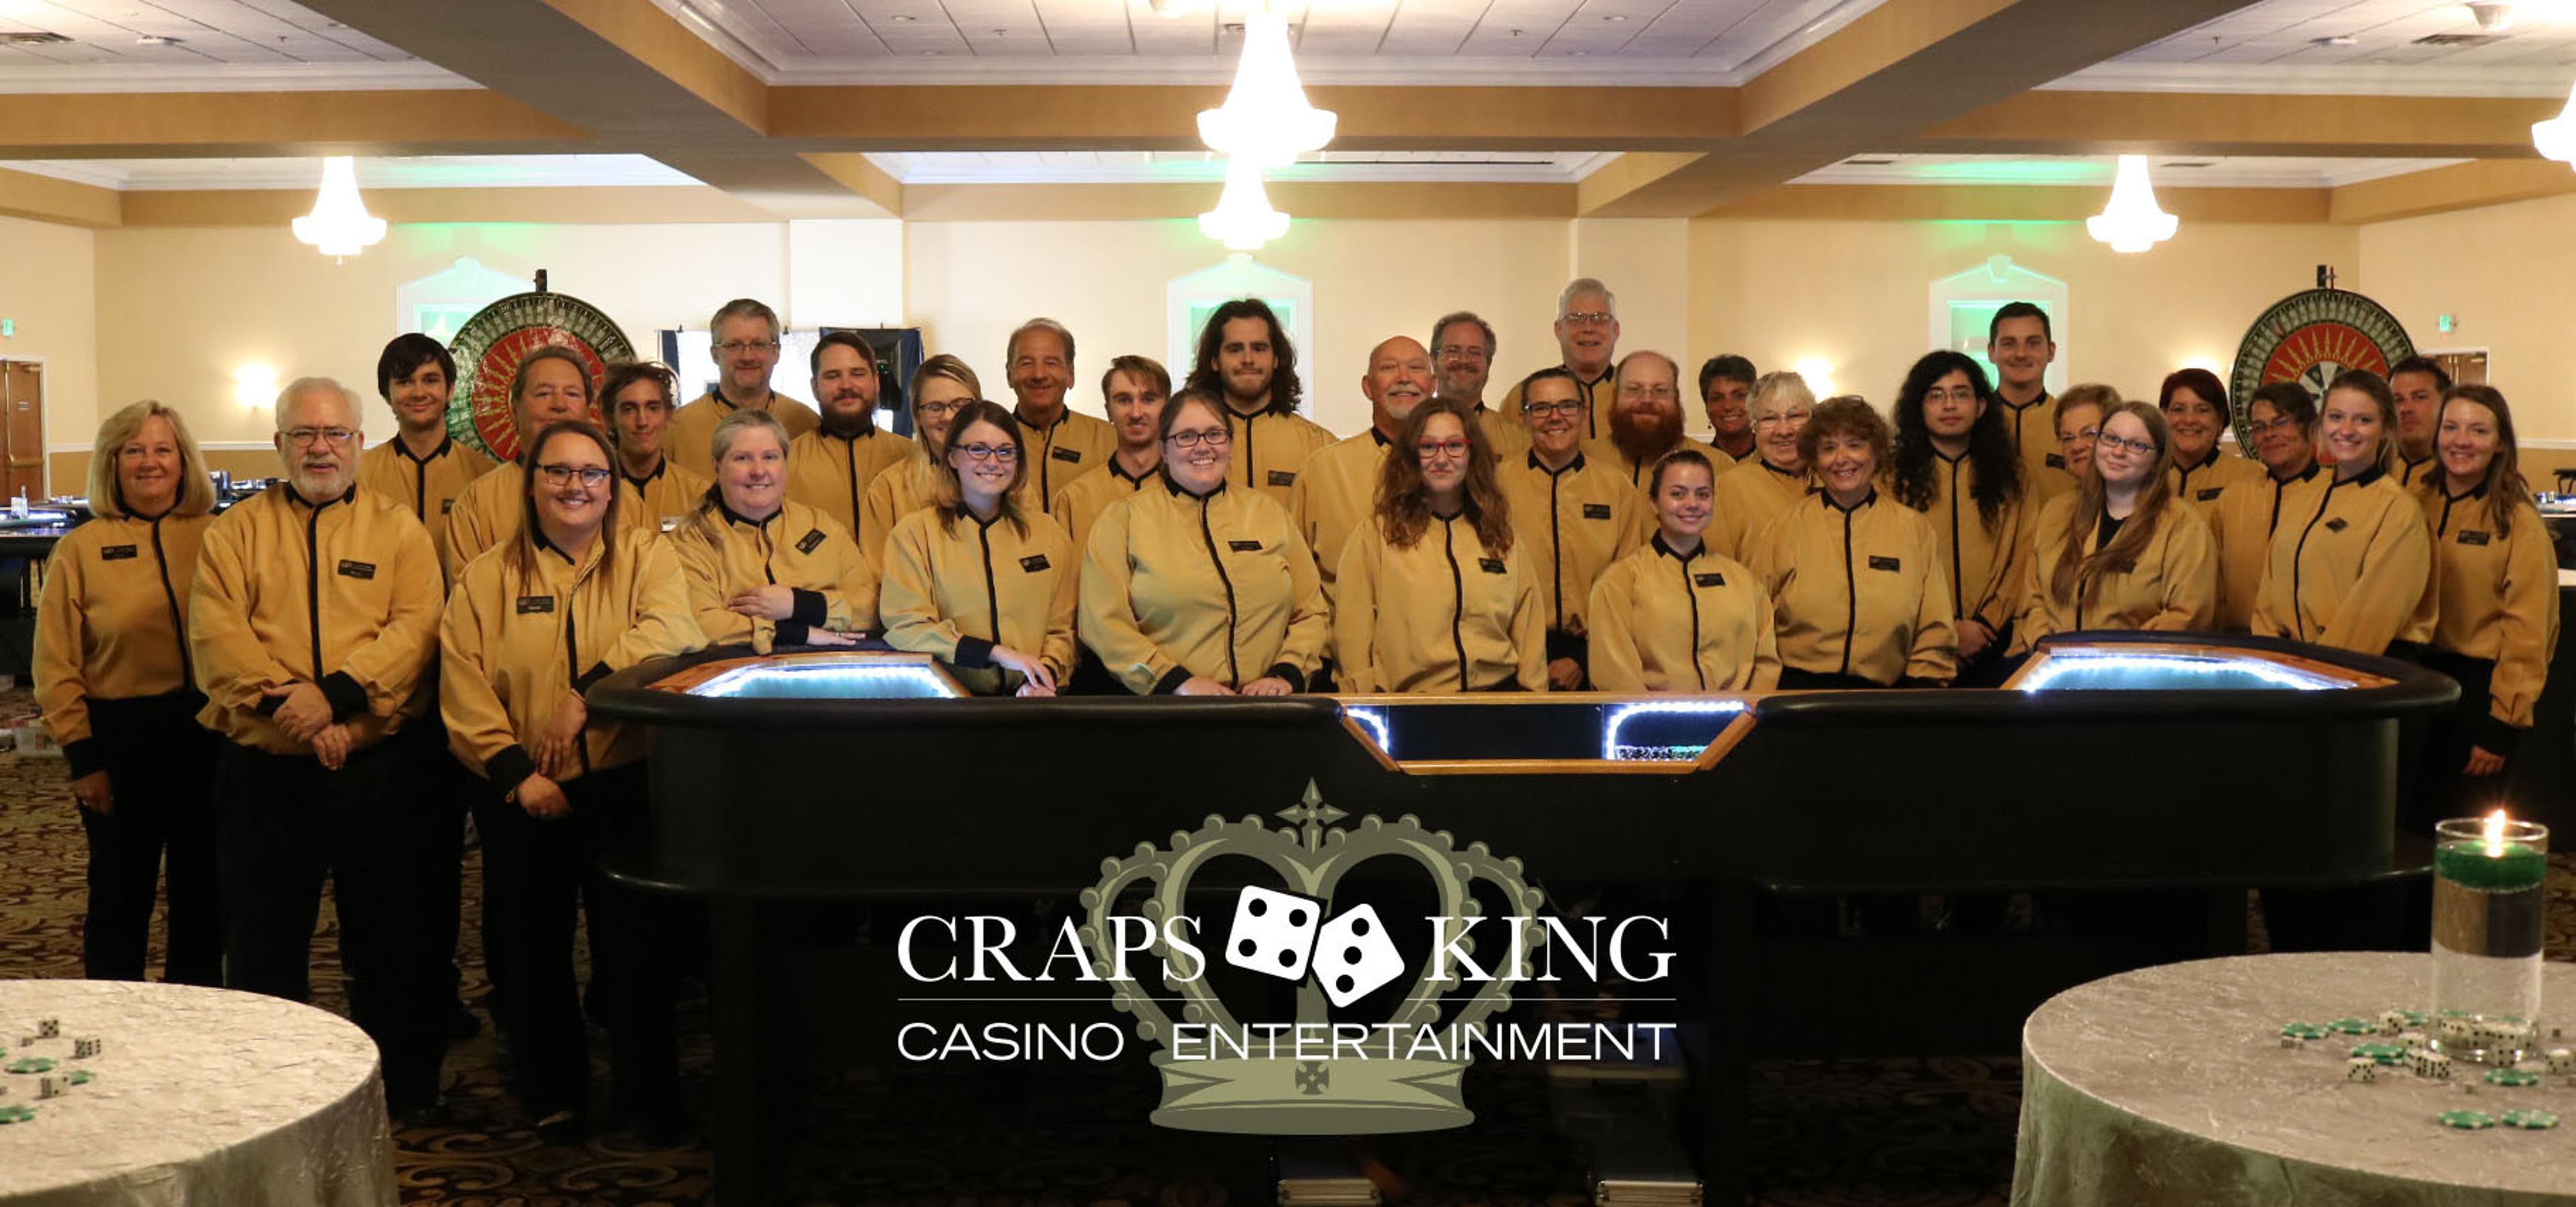 Craps King Casino Entertainment